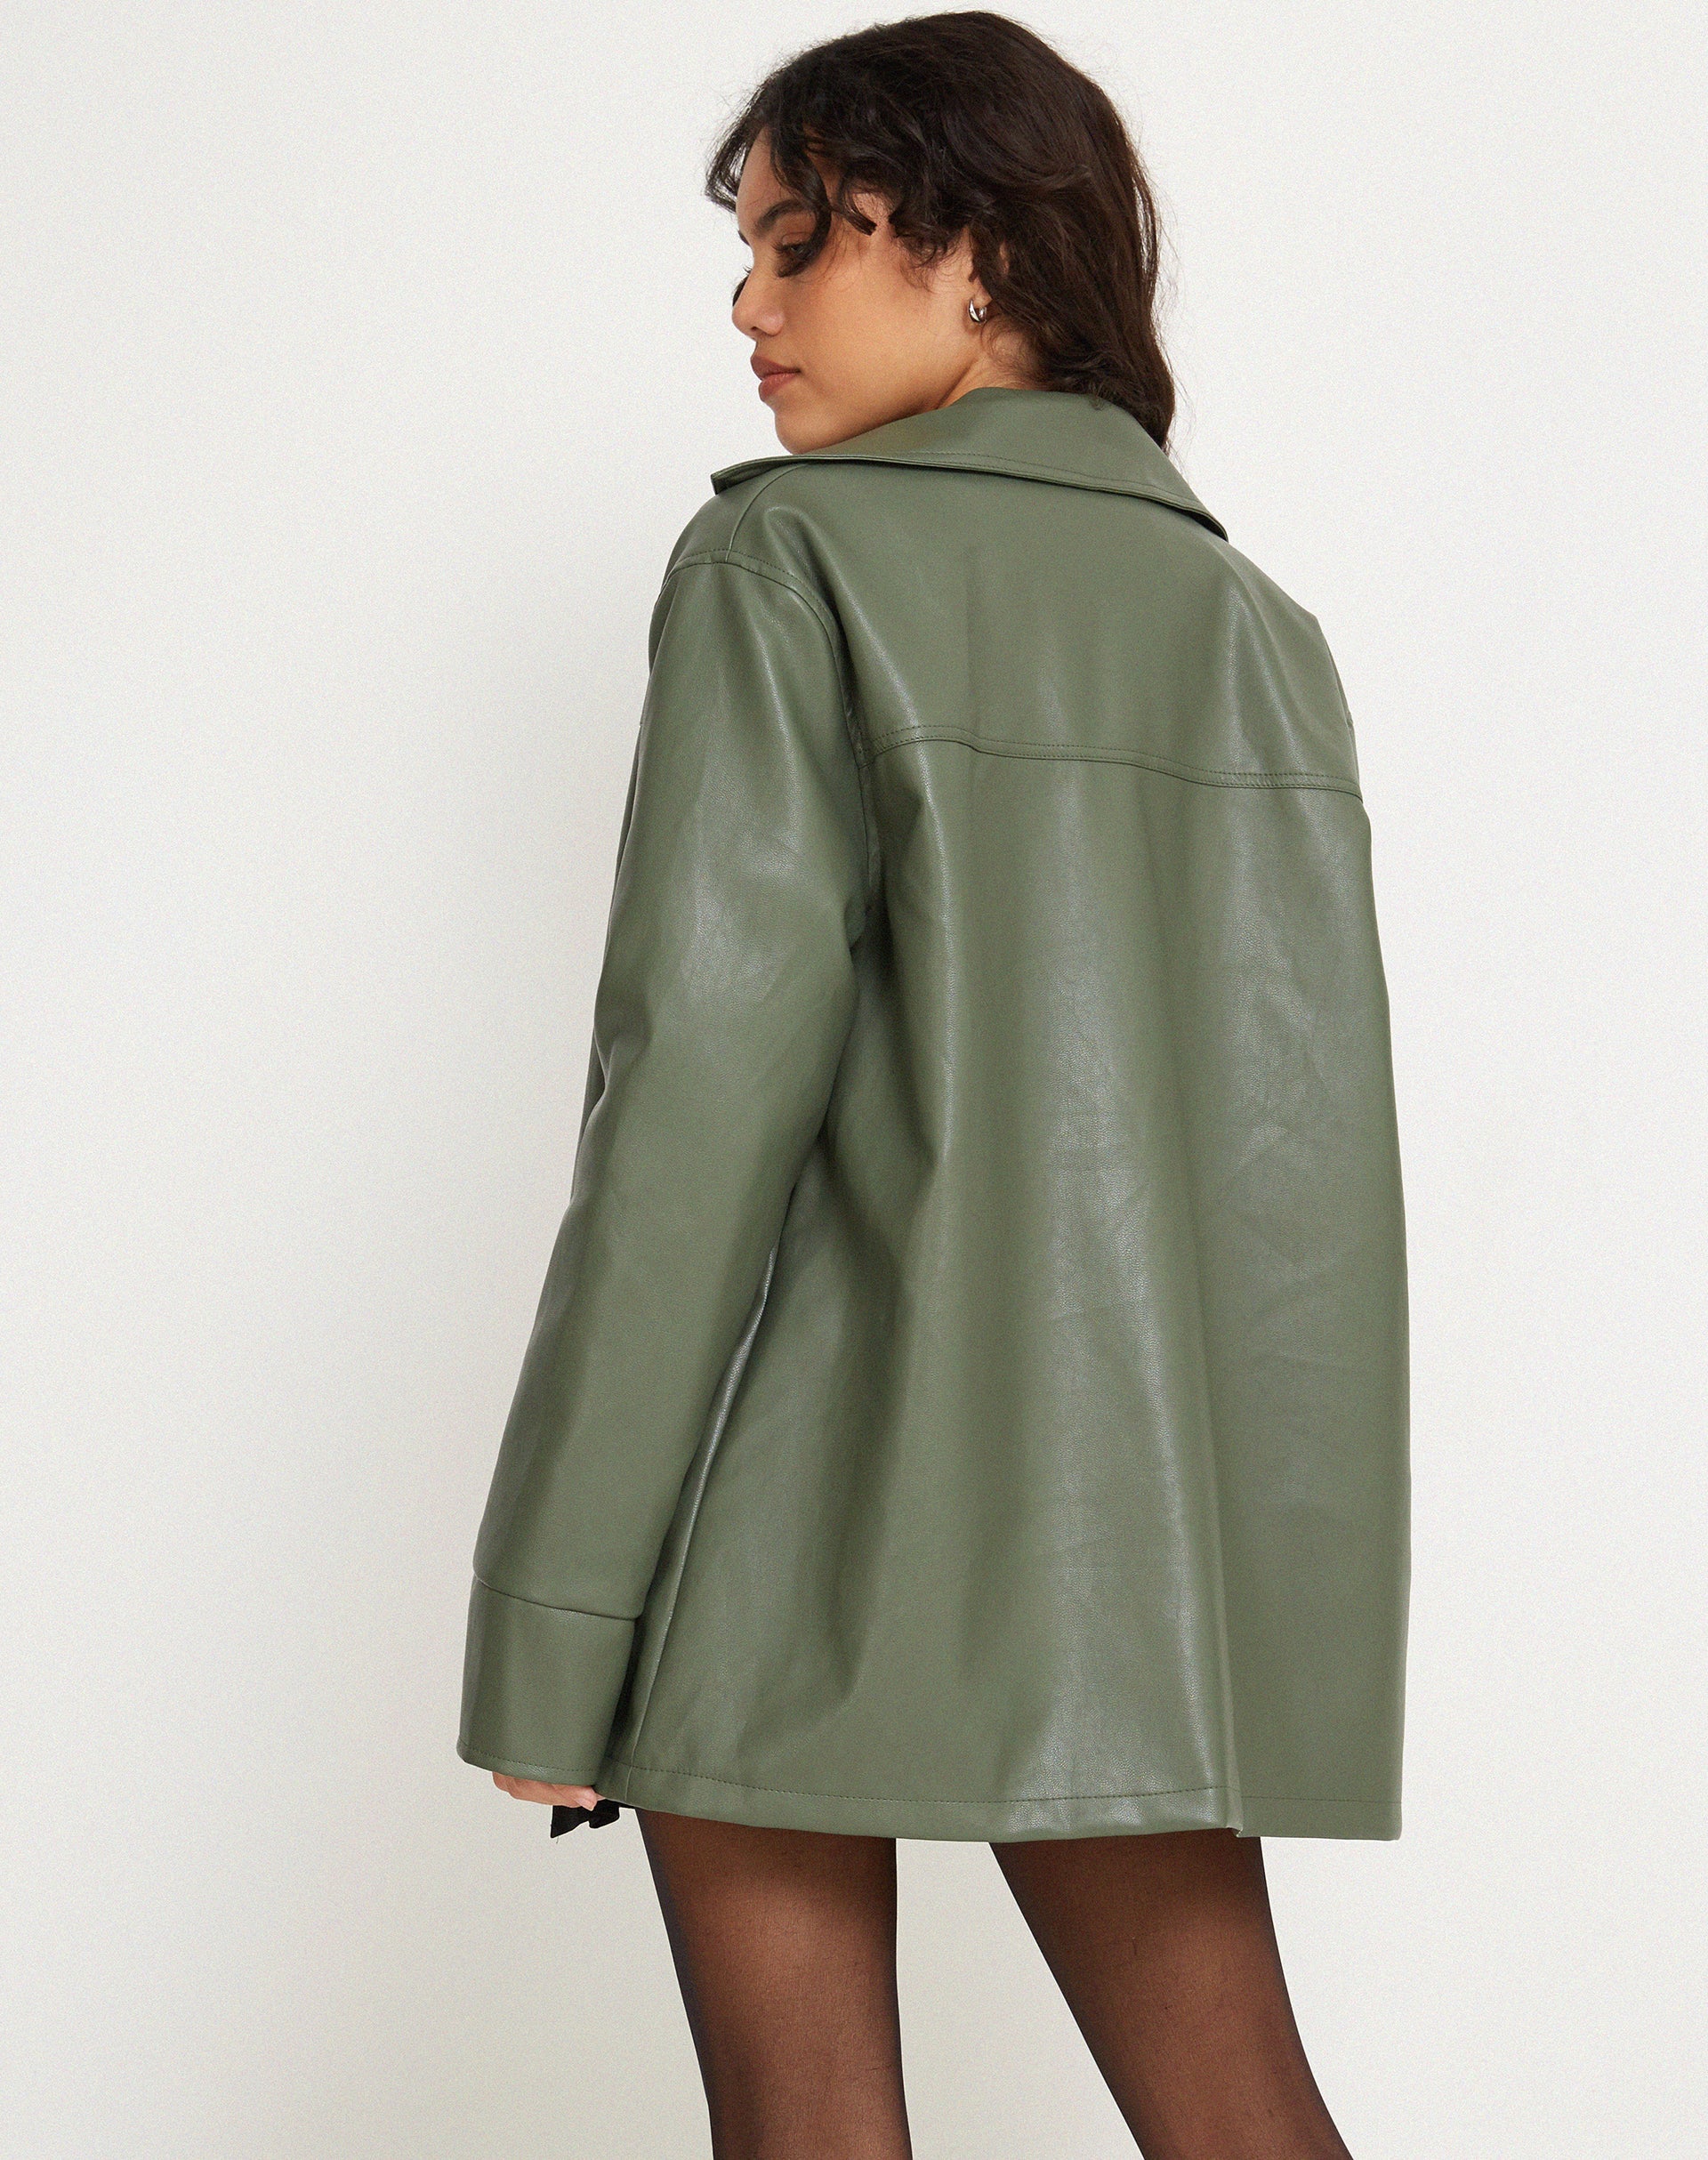 imagen de la chaqueta Tavira en PU verde militar